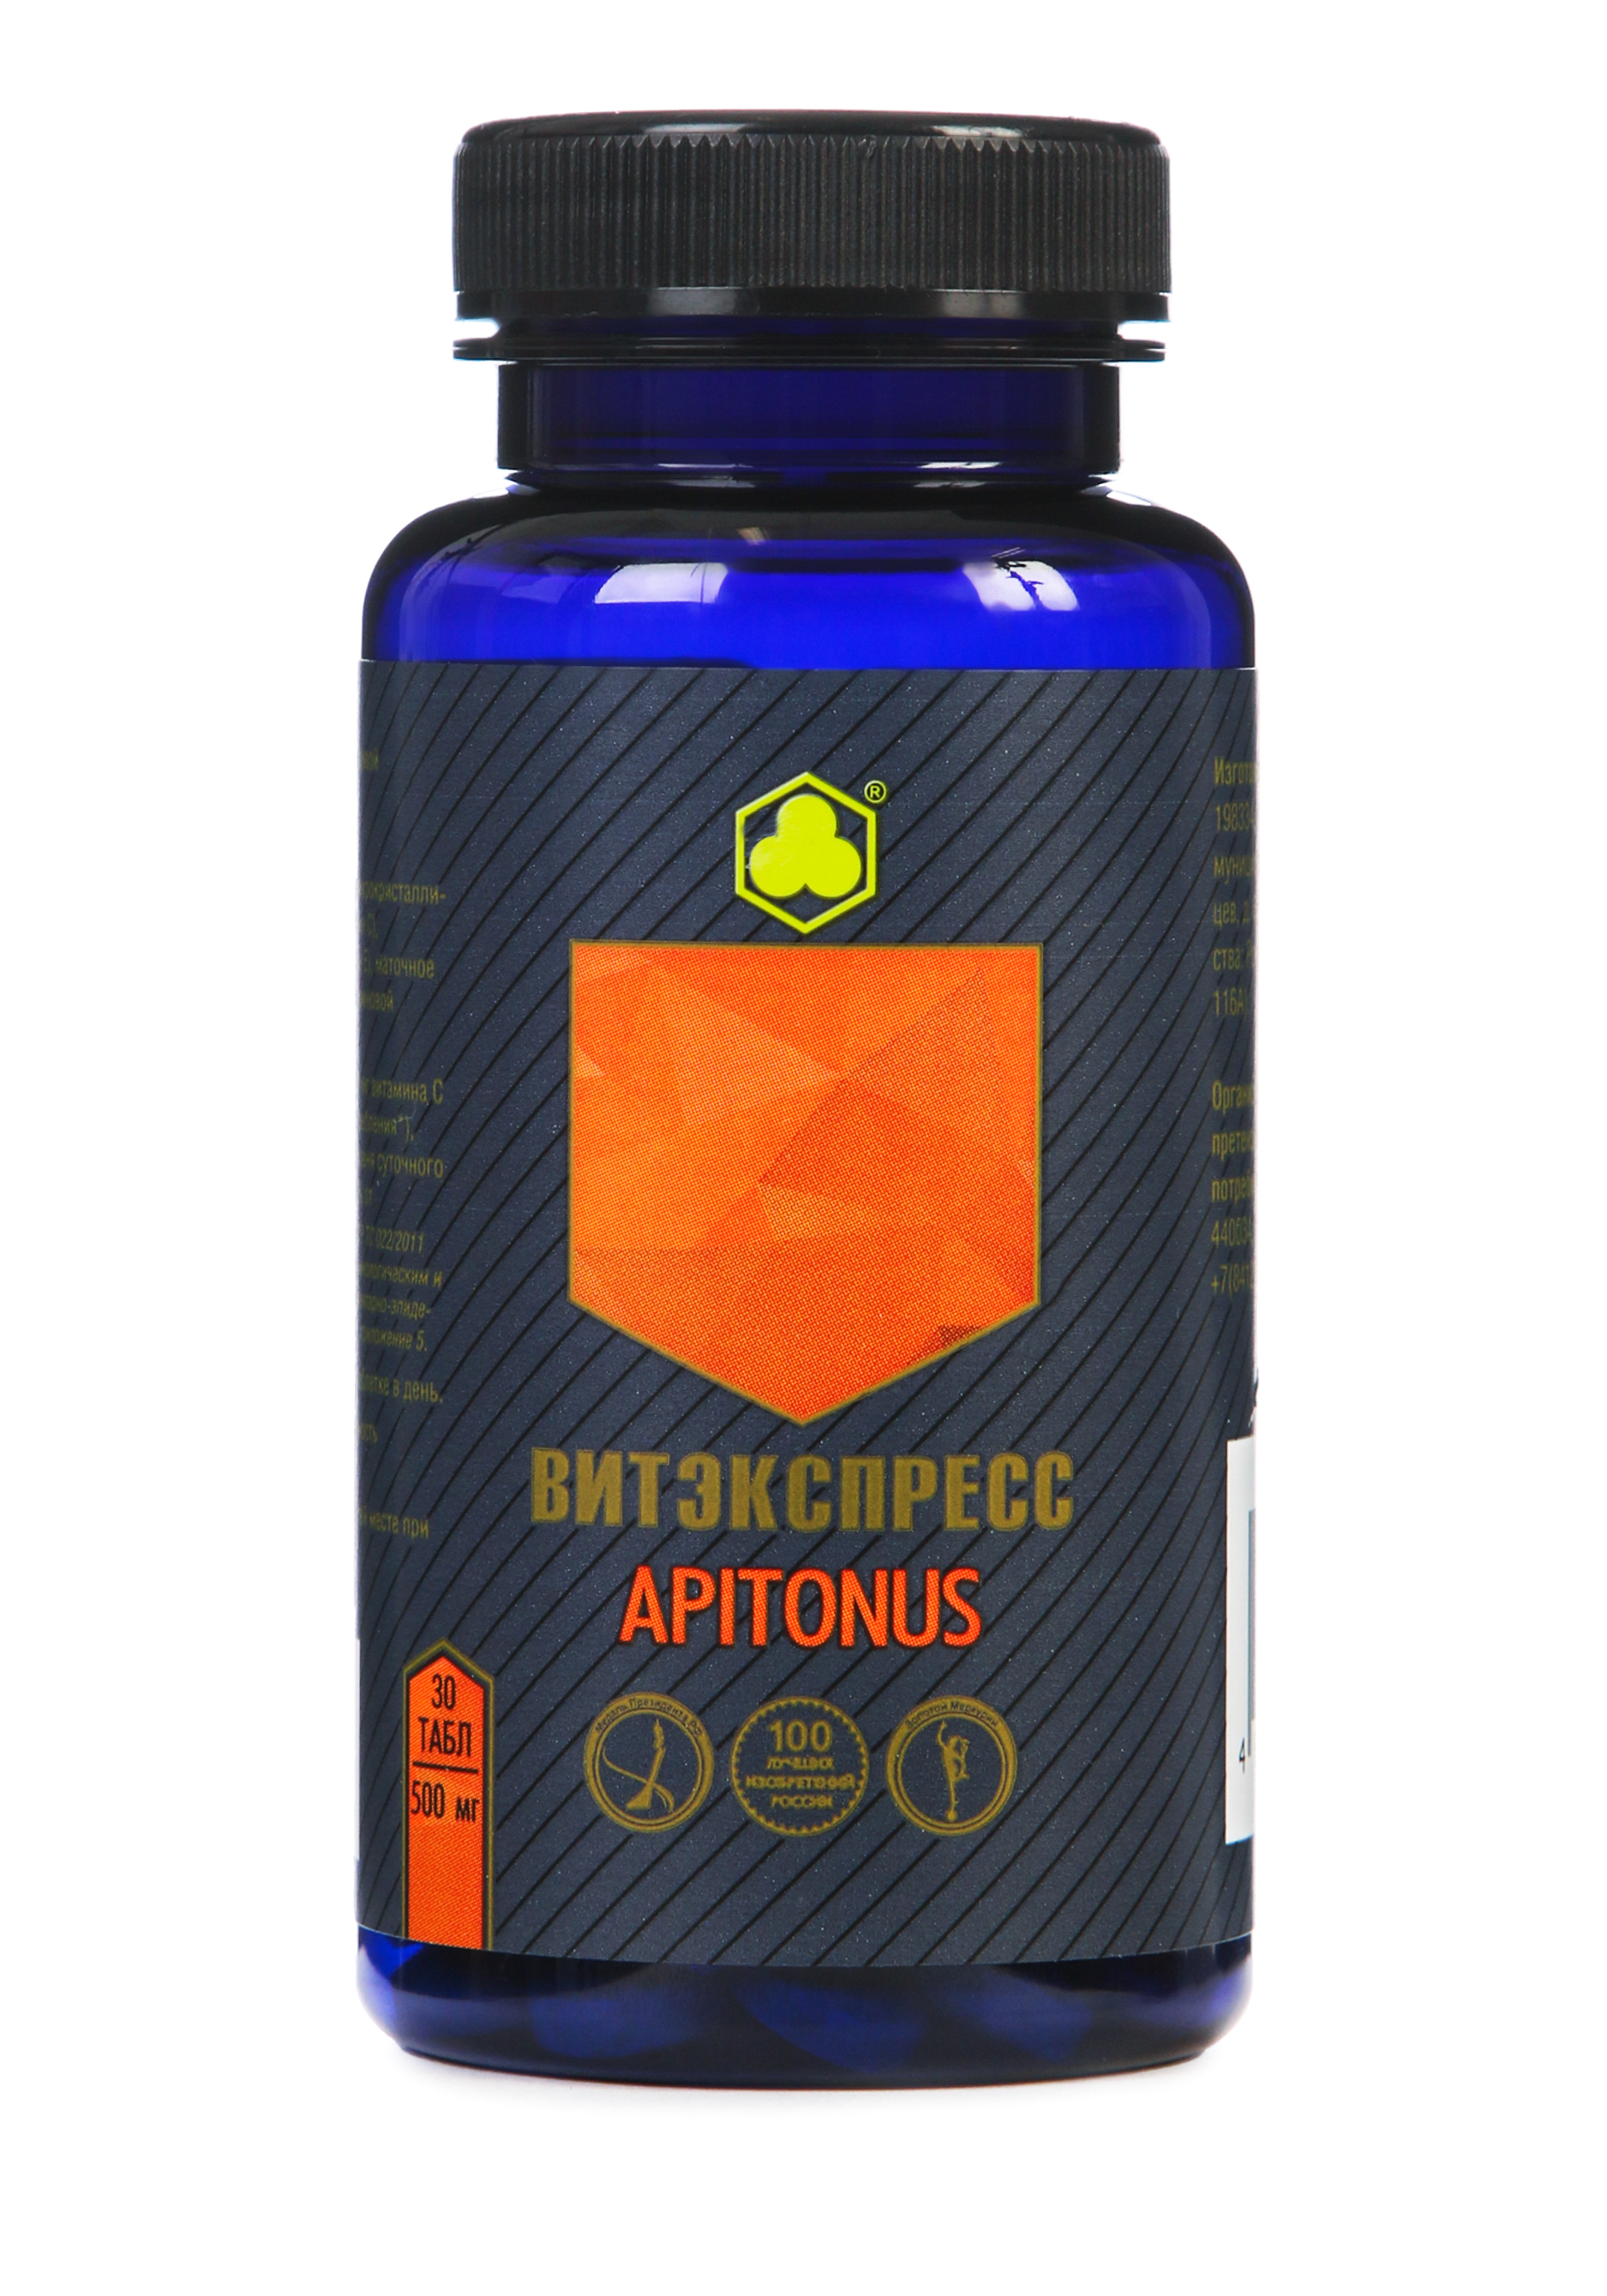 Органик-комплекс Apitonus